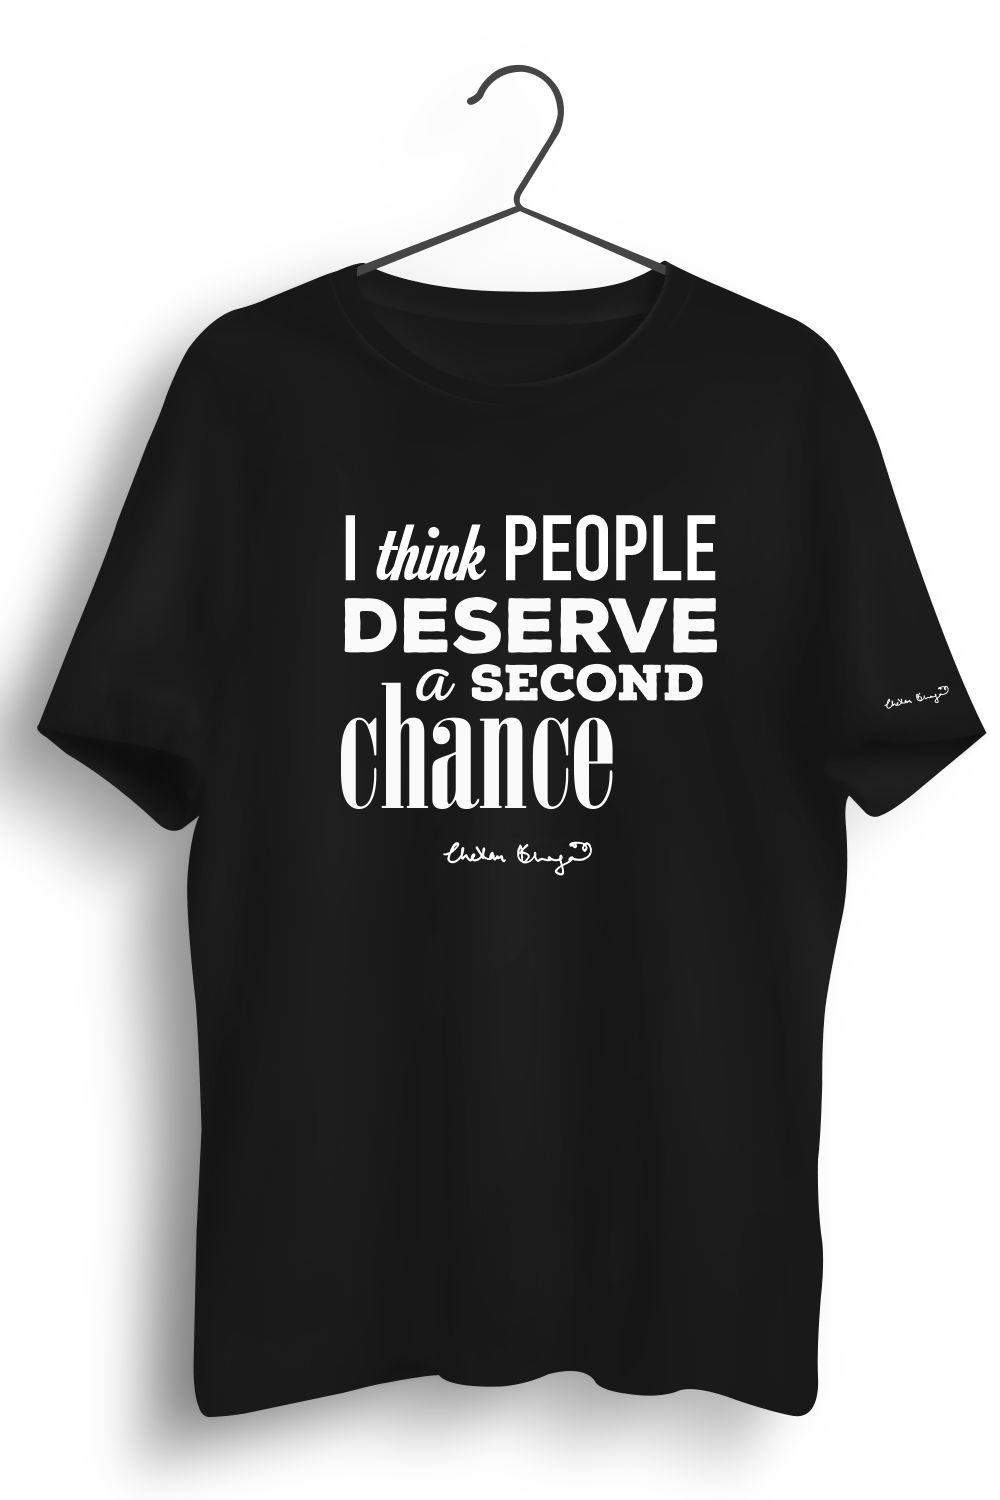 Second Chance Printed Tshirt